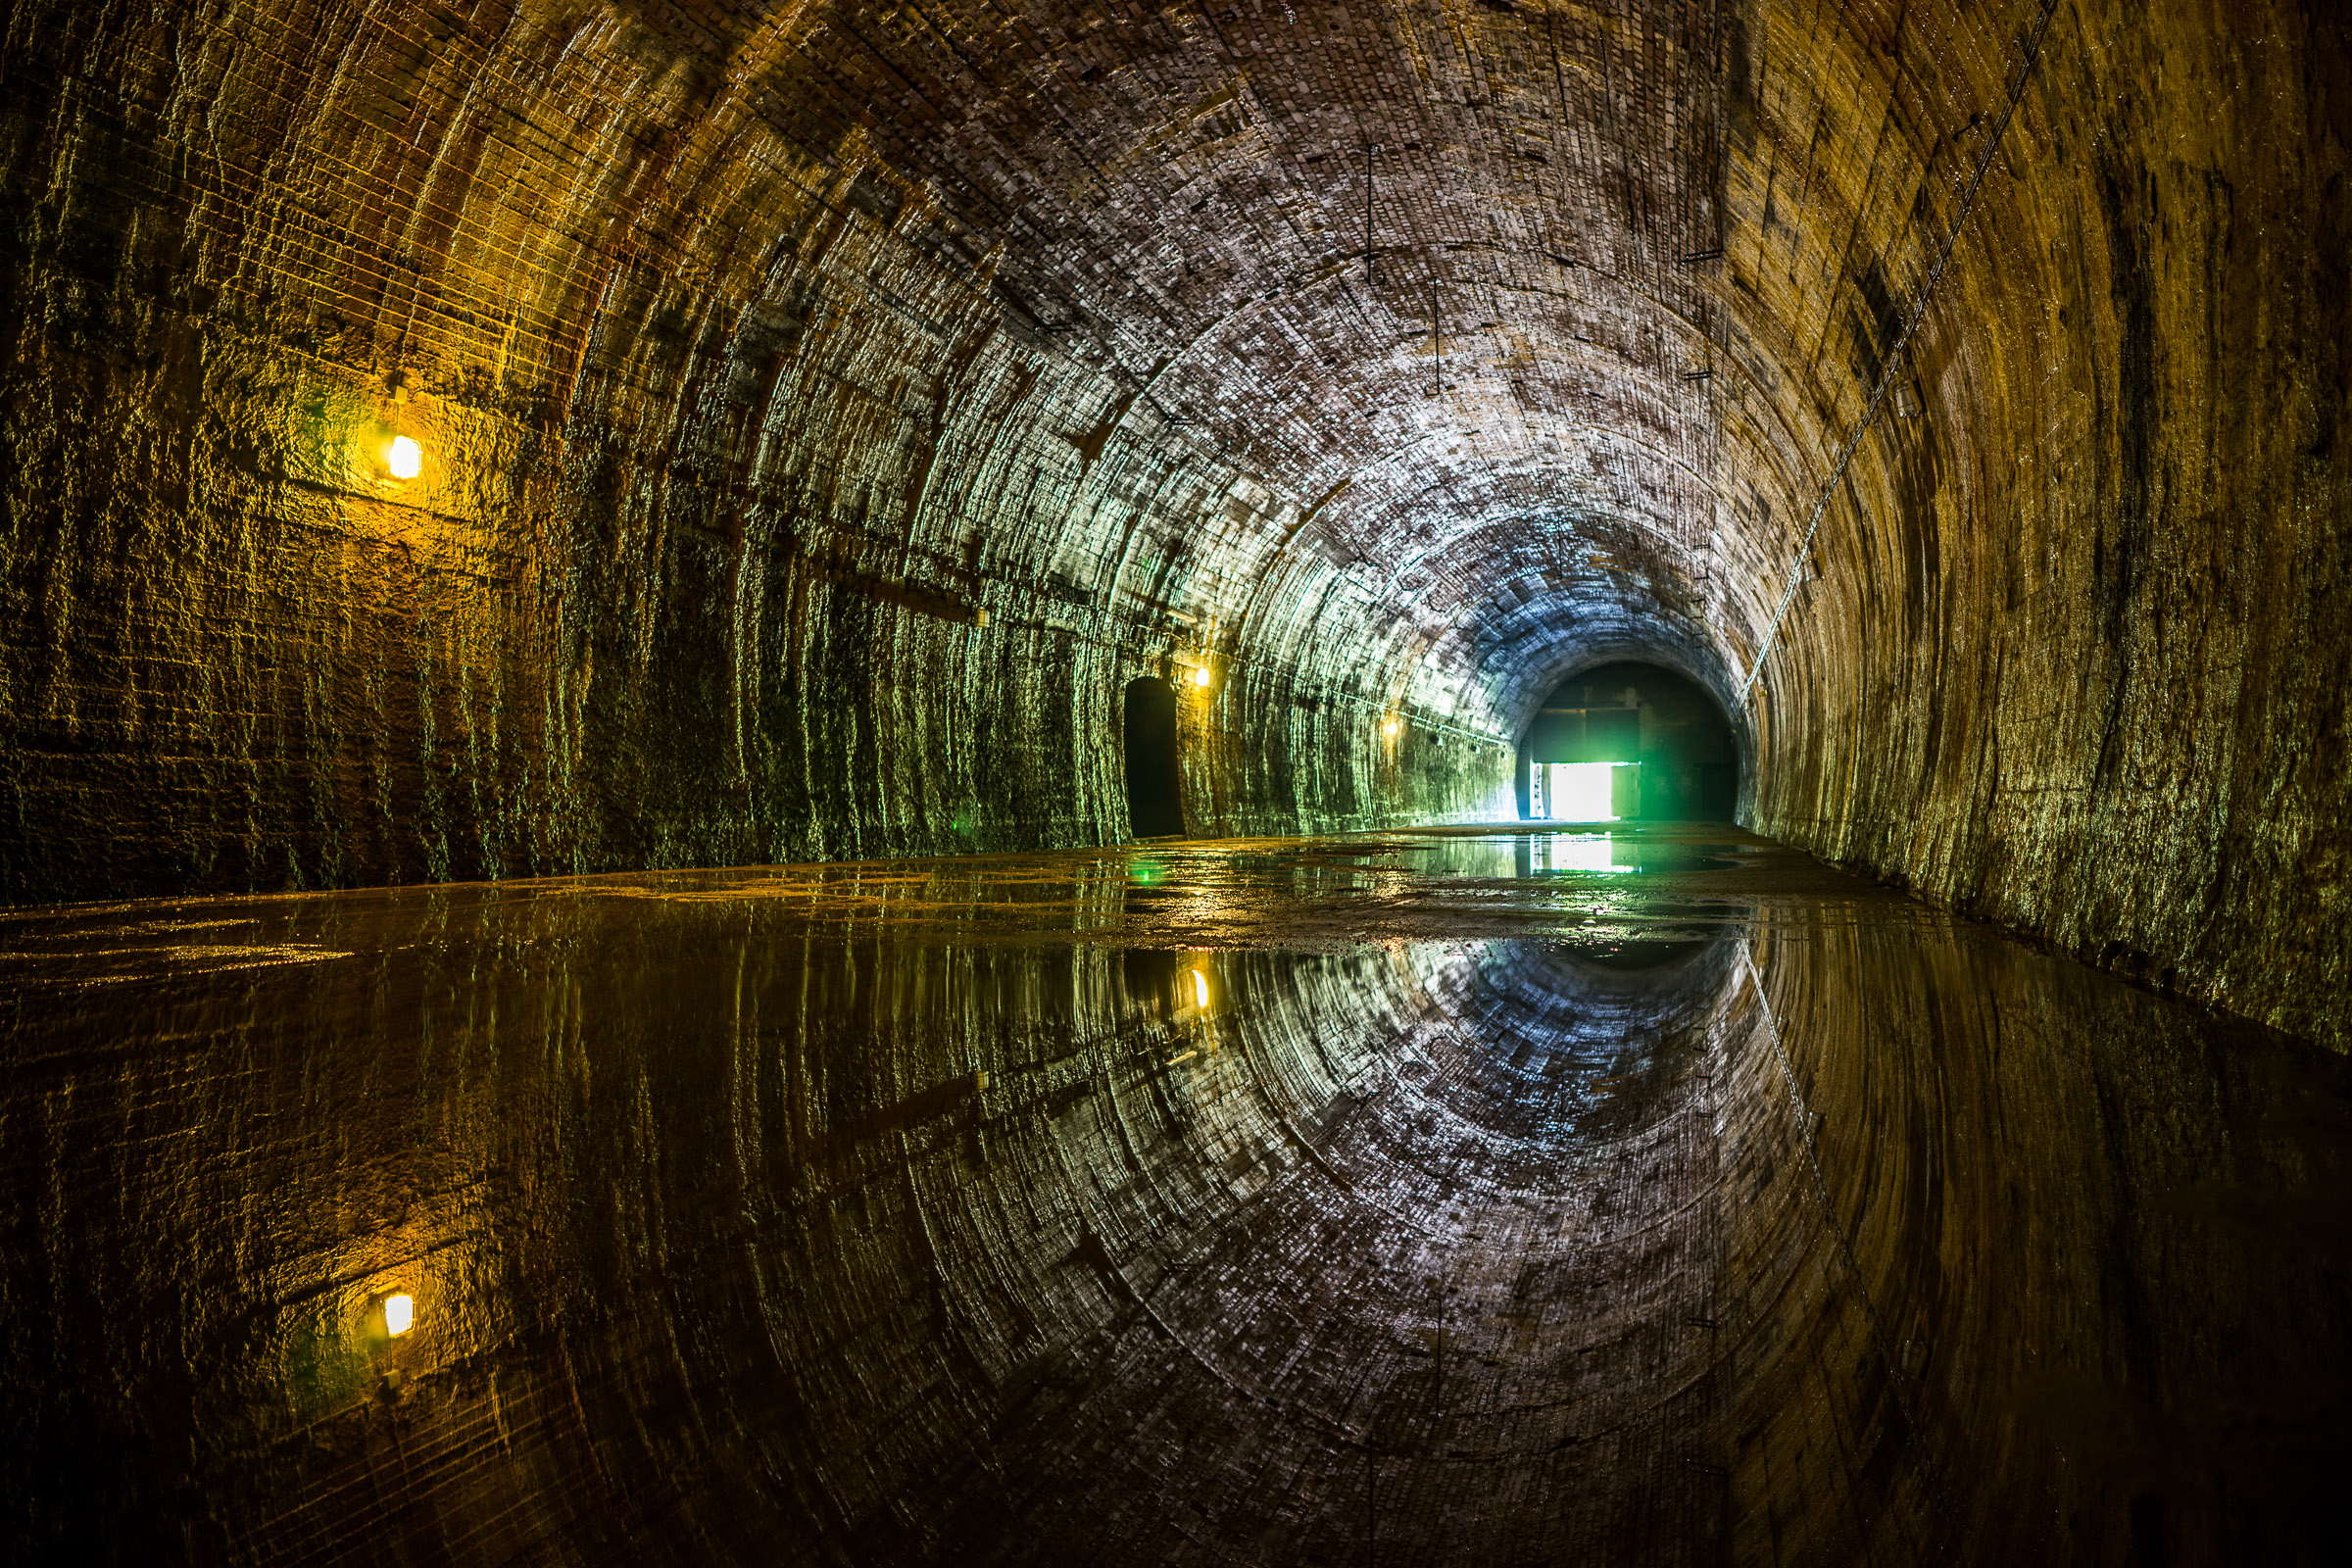 Wnętrze tunelu kolejowego. Tunel rozświetlają umieszczone co kilka metrów pojedyncze lampy.